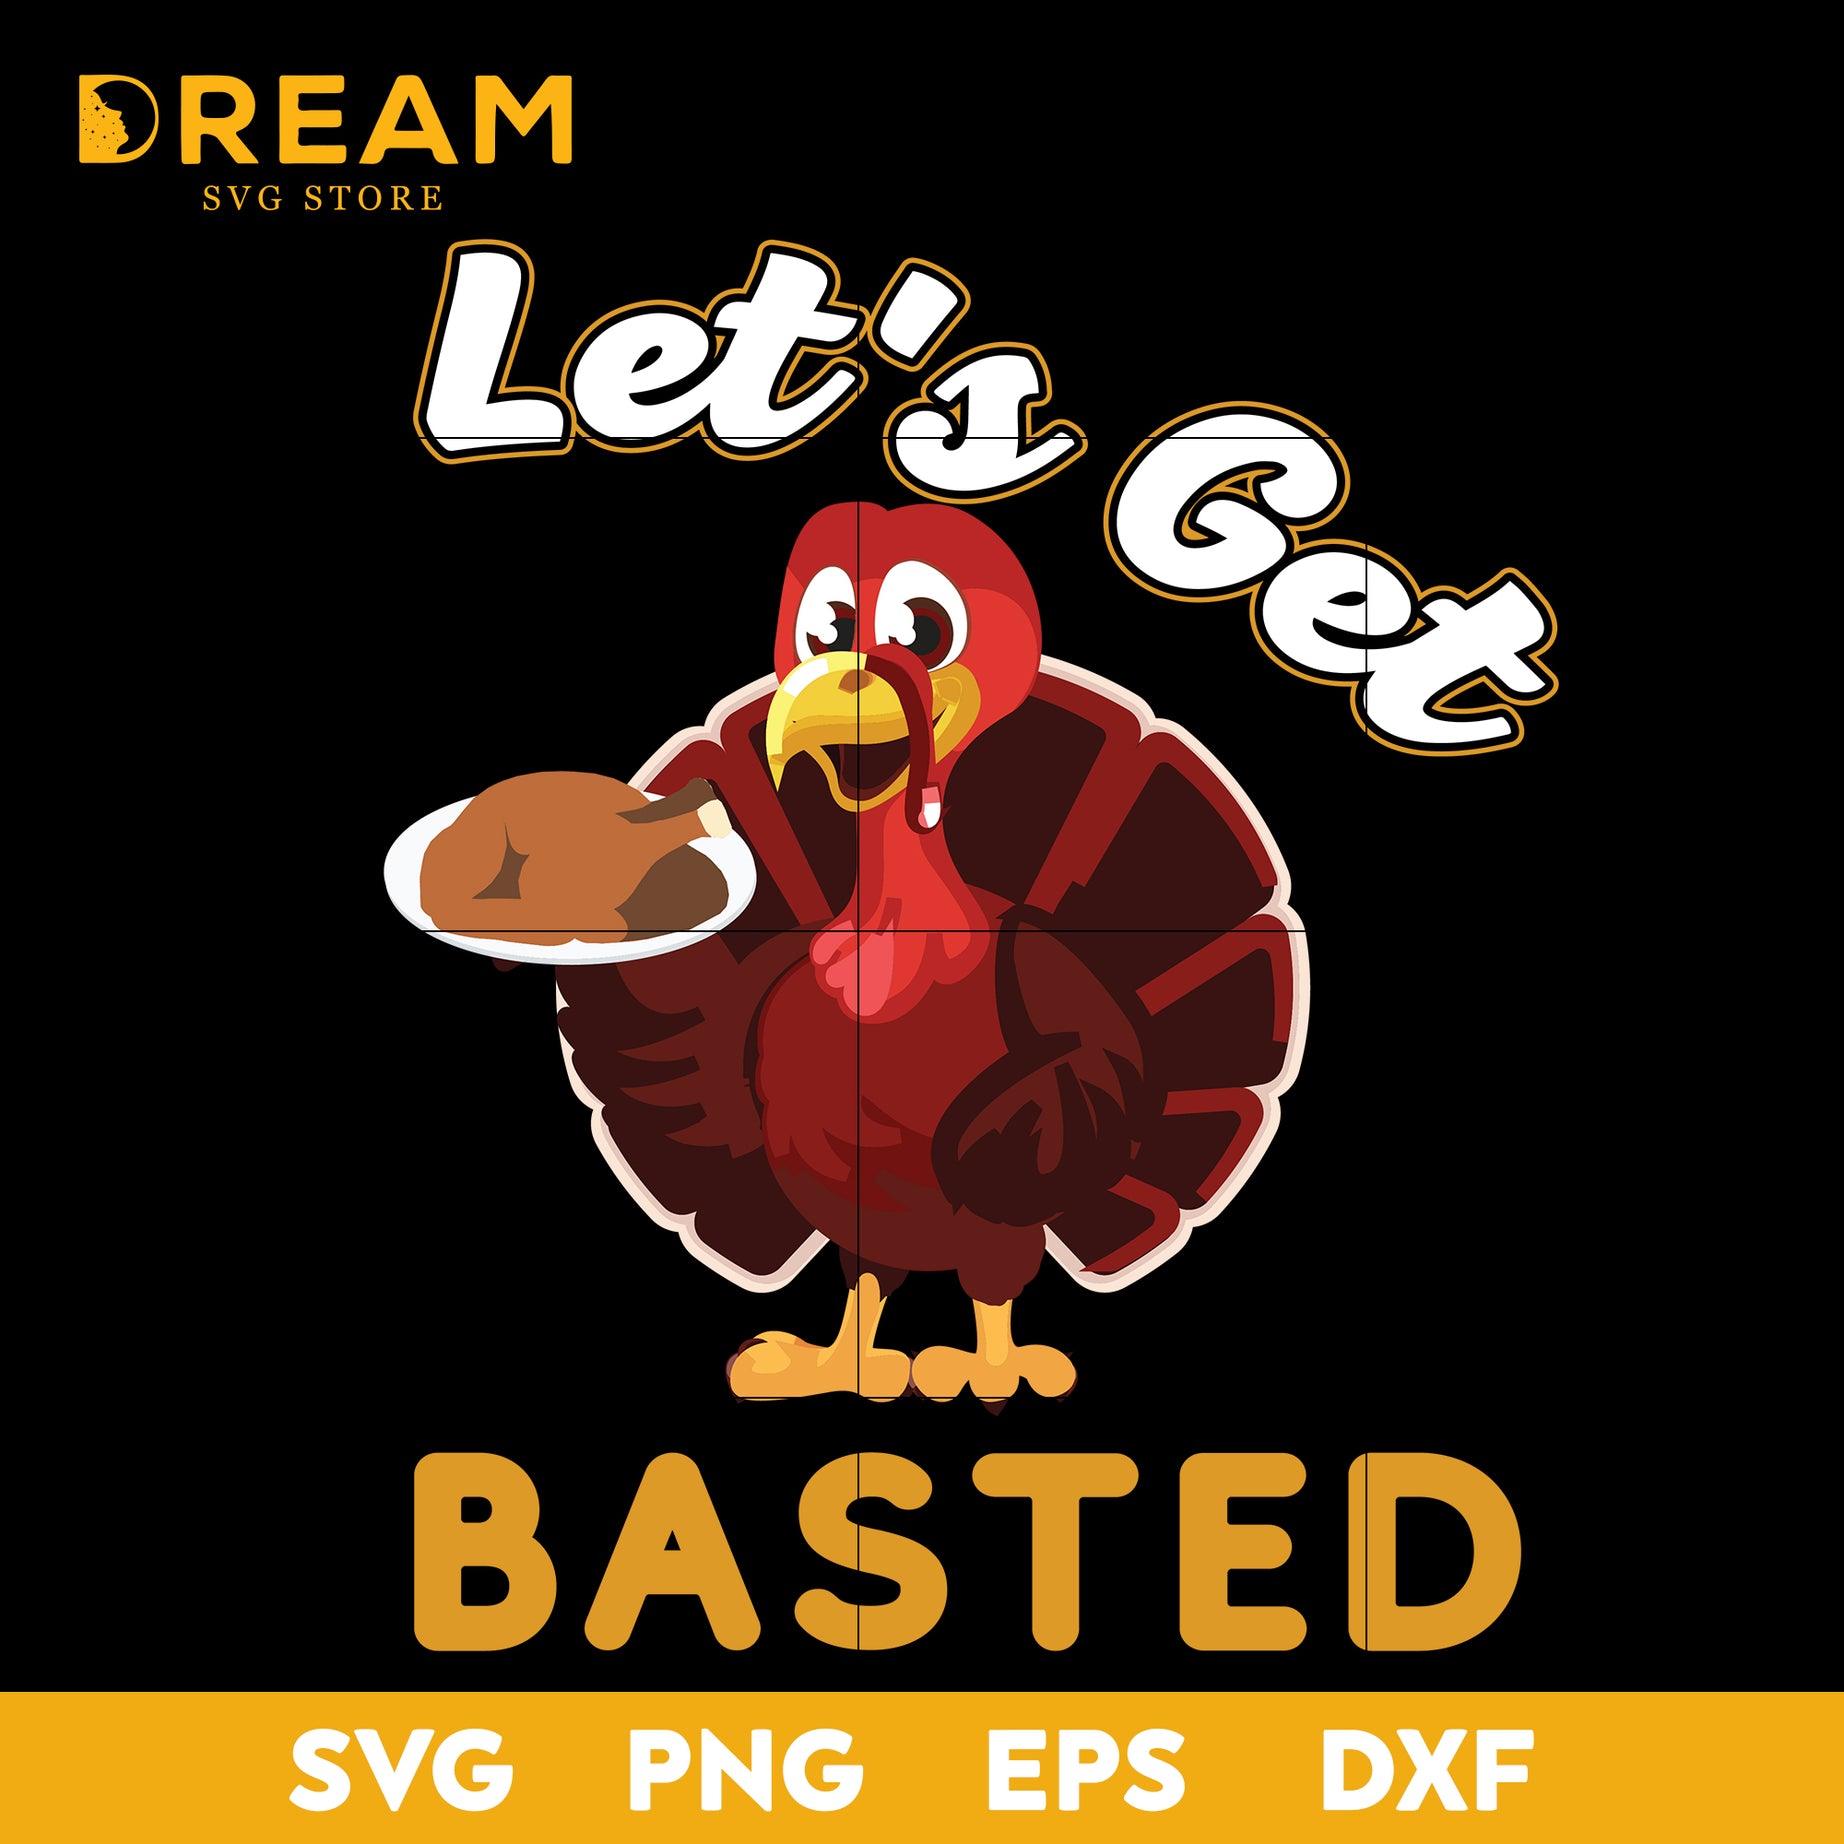 Let's get basted turkey thanksgiving svg, thanksgiving day svg, png, dxf, eps digital file TGV05112013L